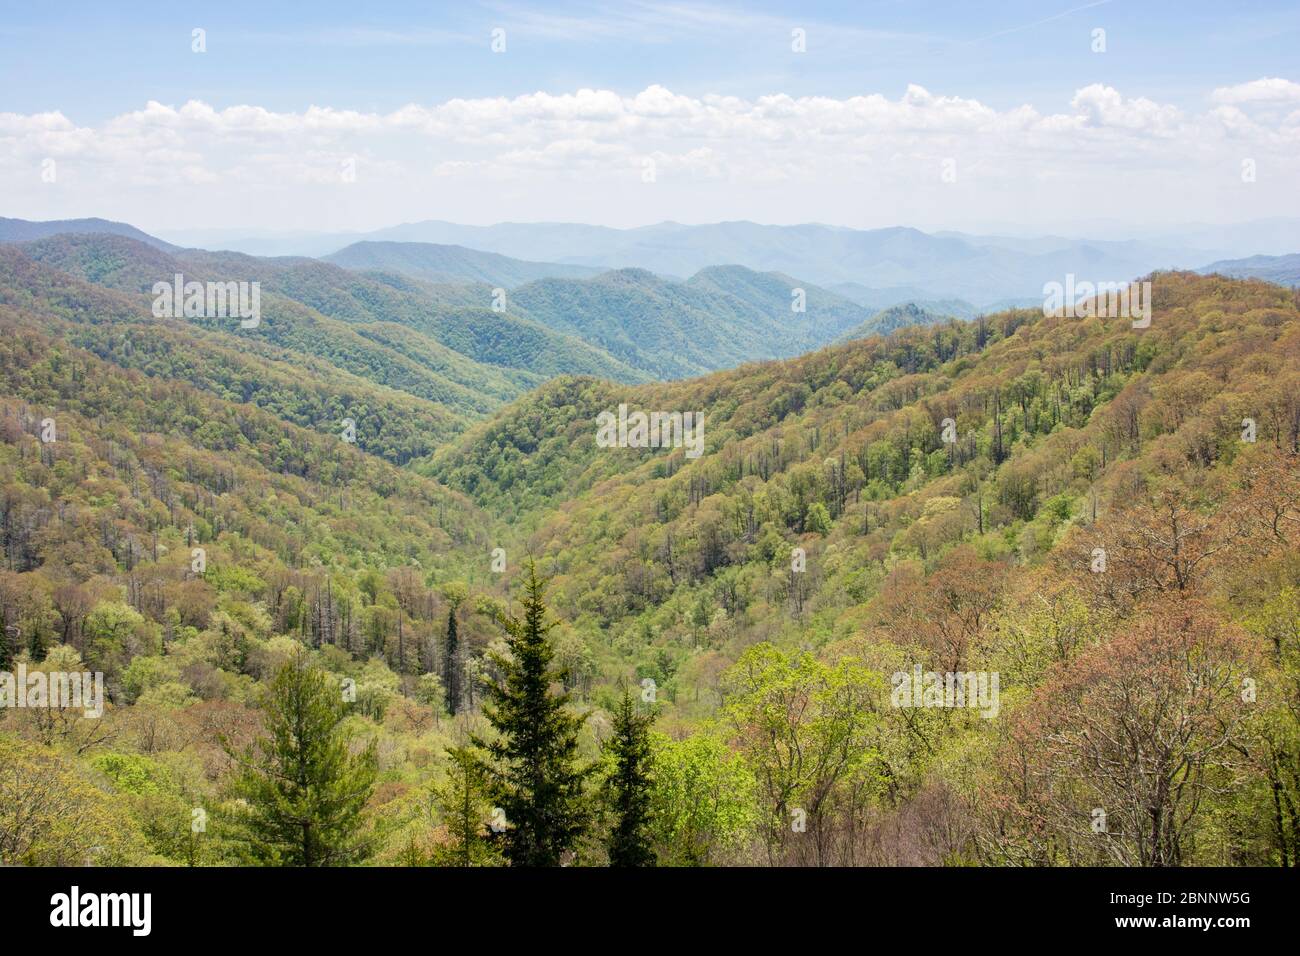 Newfound Gap, dans le parc national des Great Smoky Mountains, est un col de montagne offrant des vues et des vues panoramiques incroyables. Le sentier des Appalaches passe également par. Banque D'Images